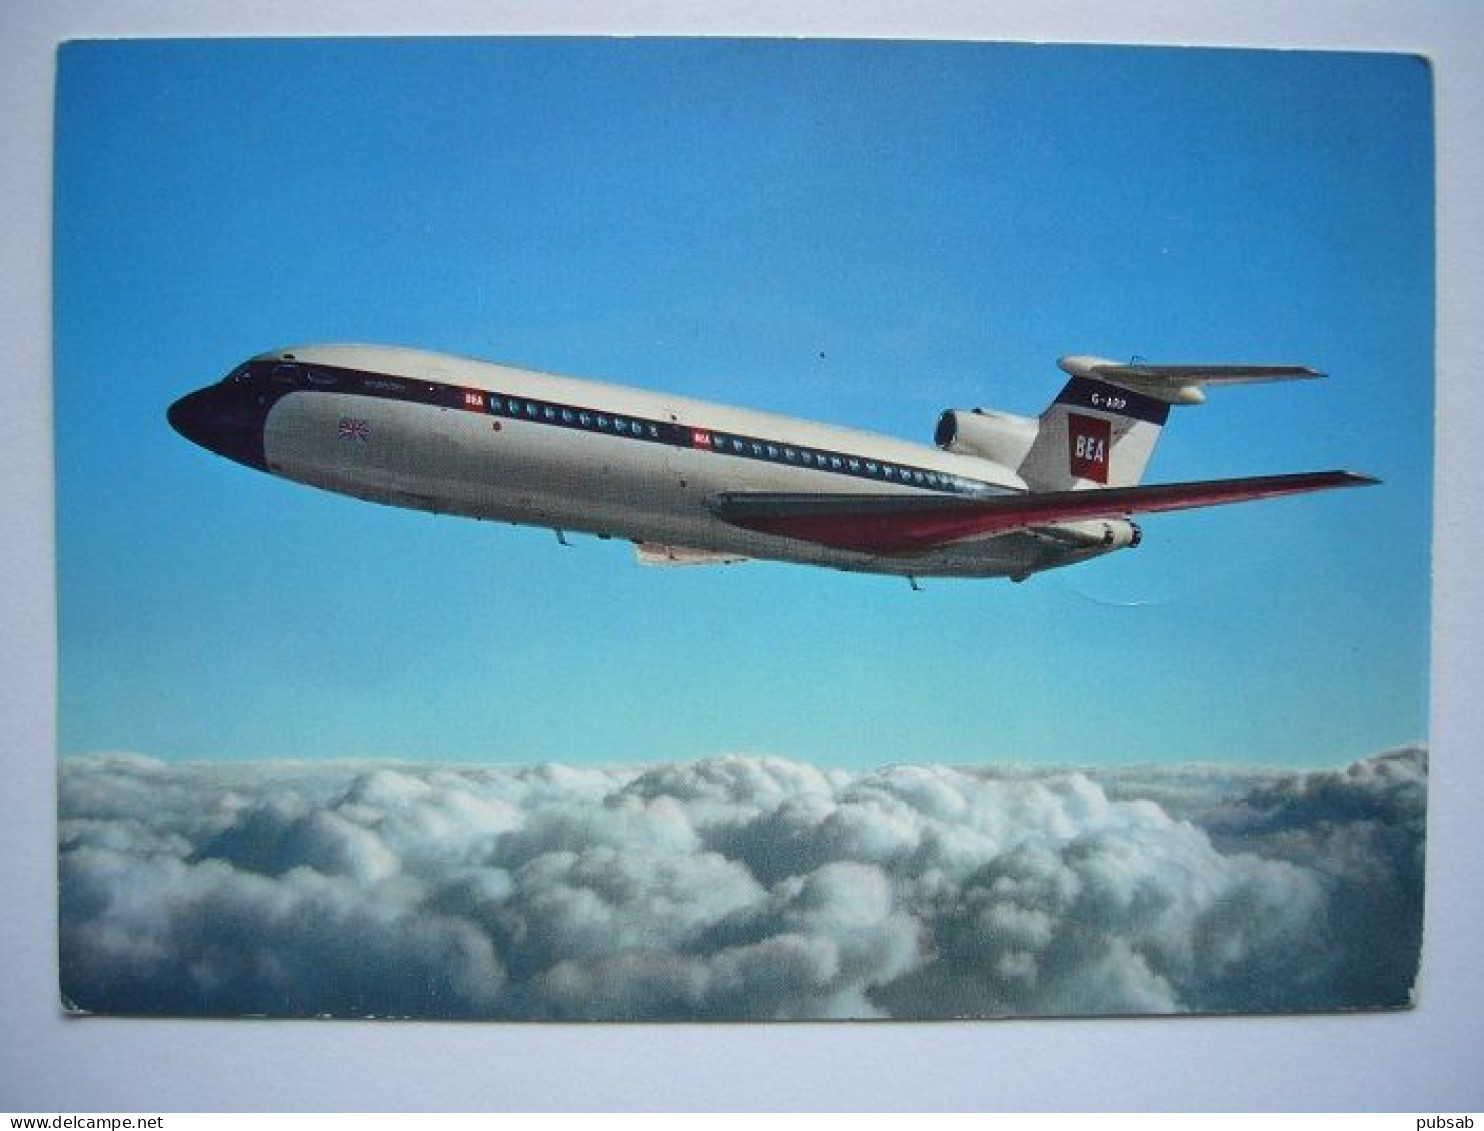 Avion / Airplane / BEA - BRITISH EUROPEAN AIRWAYS / Hawker Siddeley Trident Jetliner / Airline Issue - 1946-....: Era Moderna